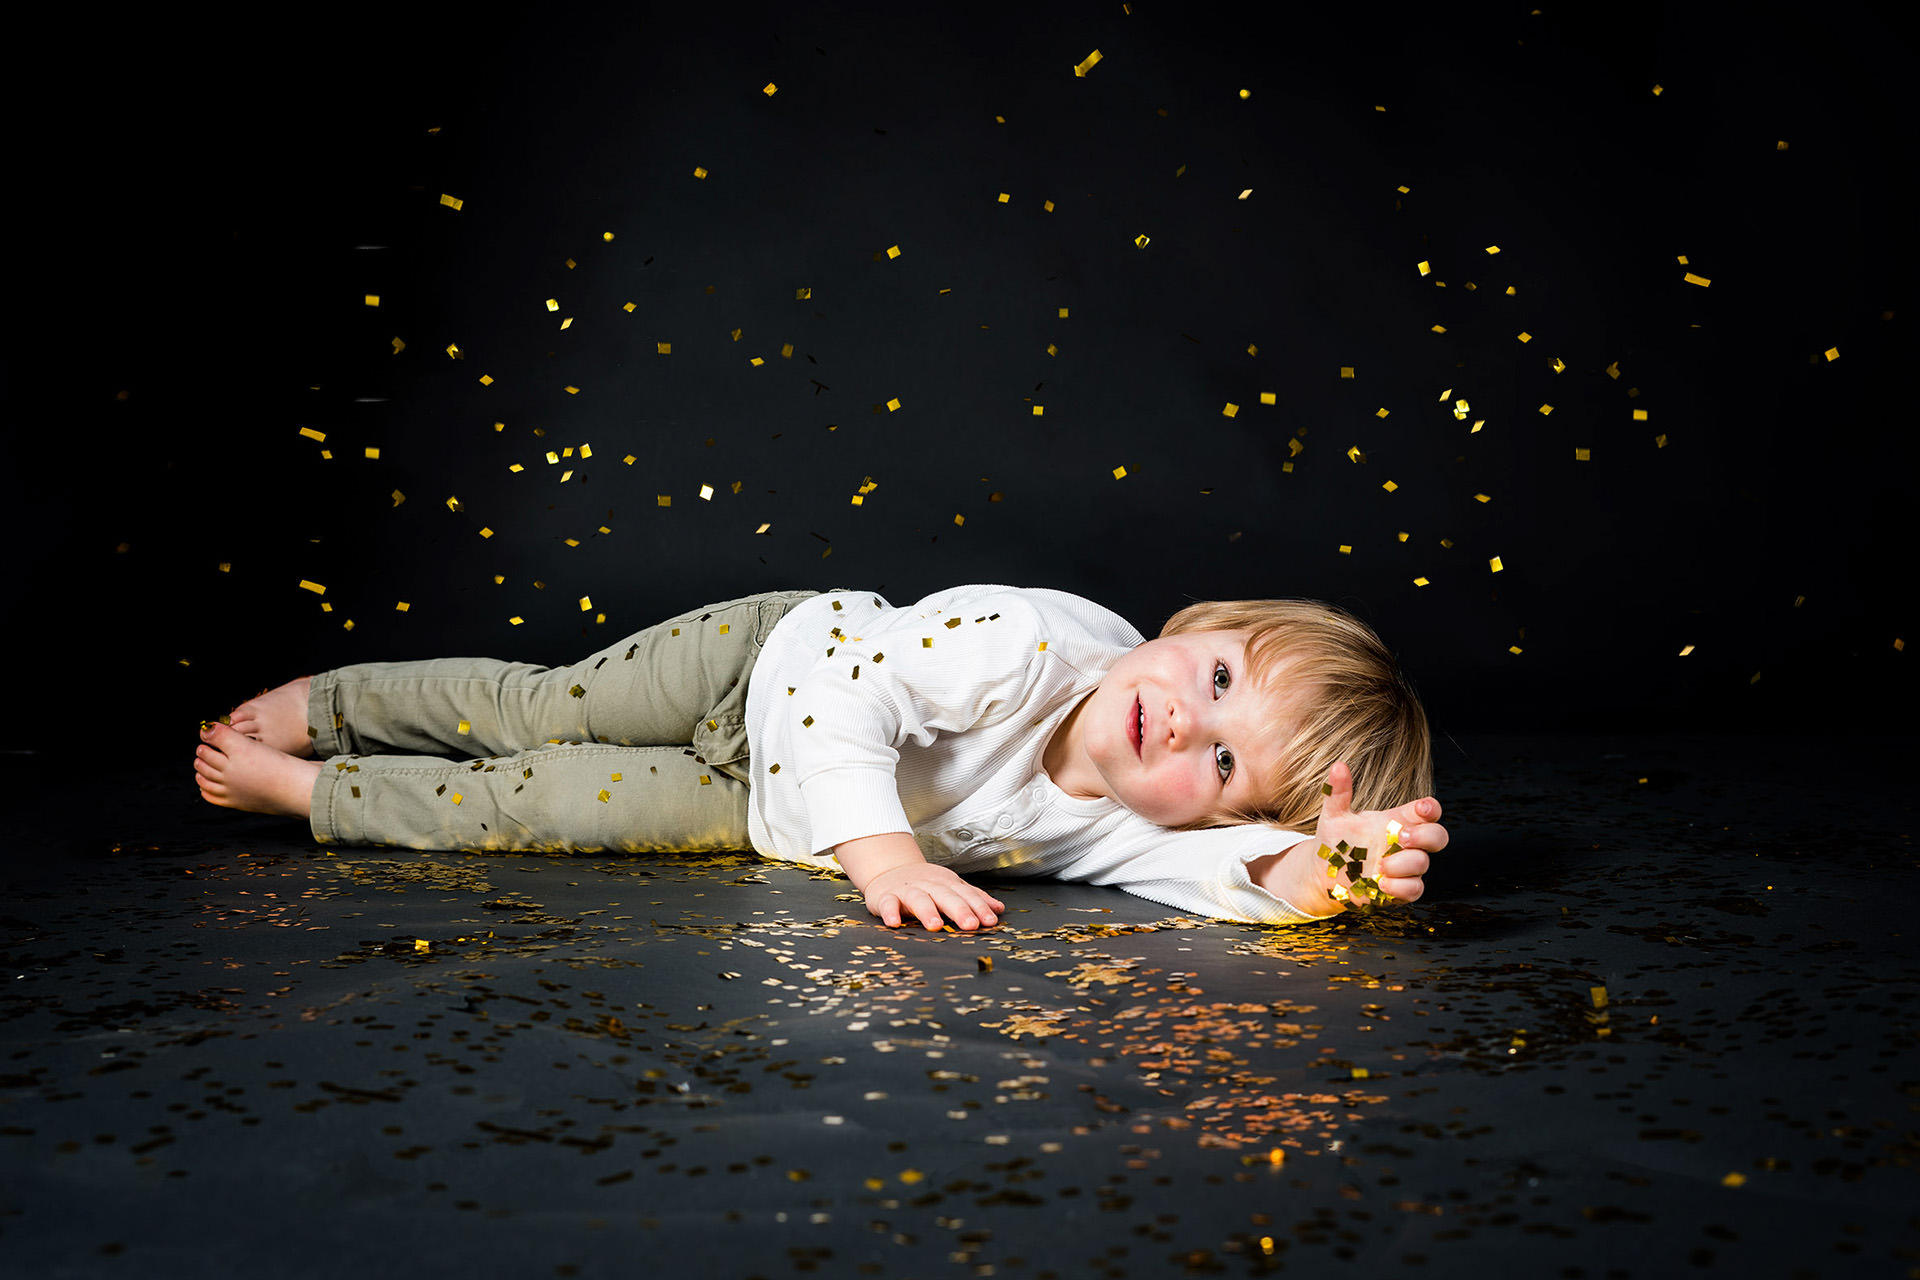 Junge liegt auf dem Boden mit goldenem Glitzerregen